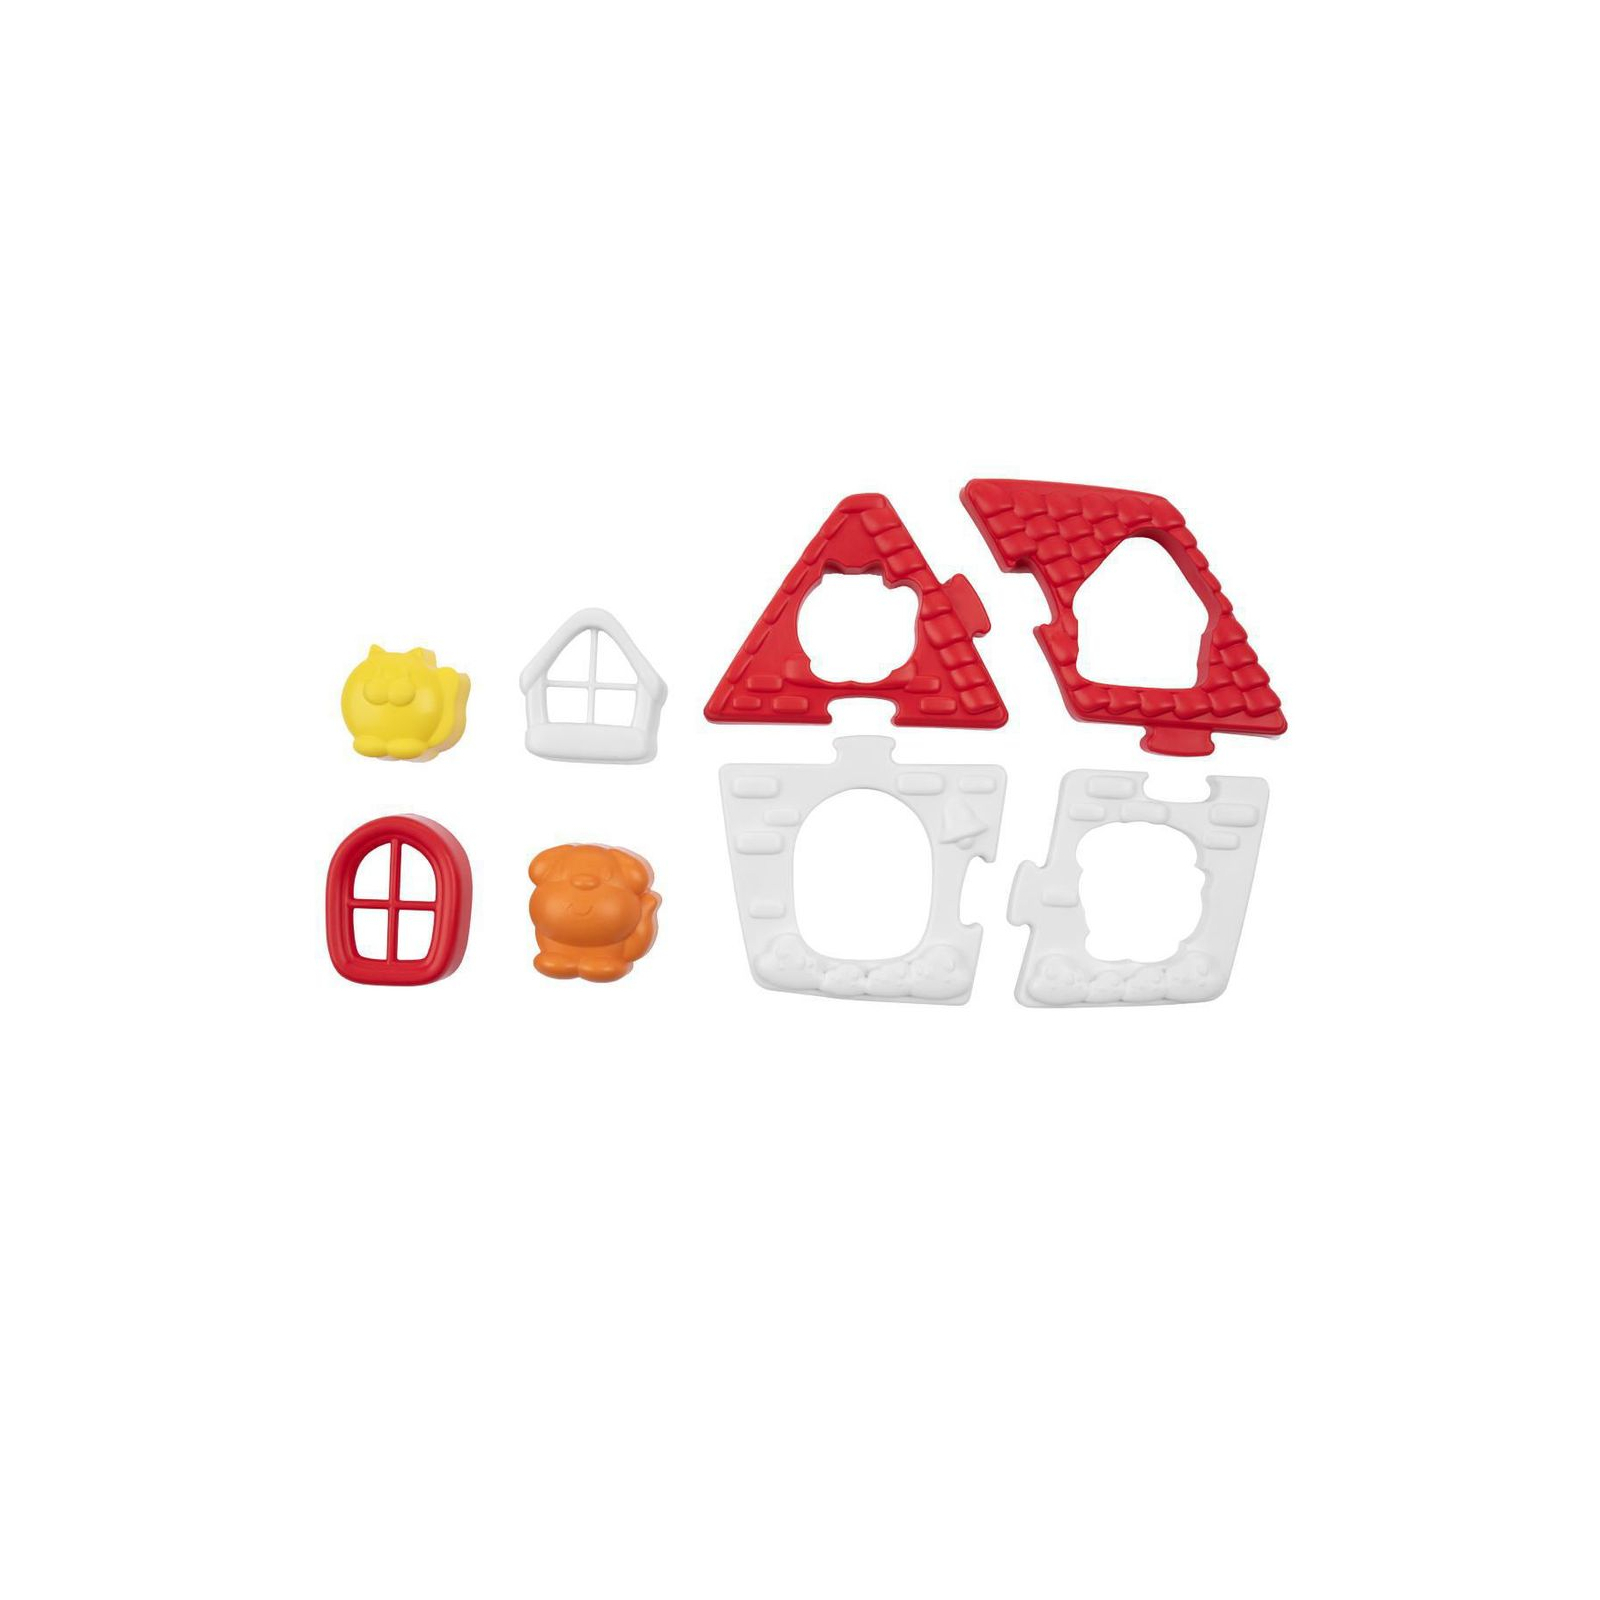 Развивающая игрушка Chicco сортер 2 в 1 Фермерский домик (11085.00) изображение 6